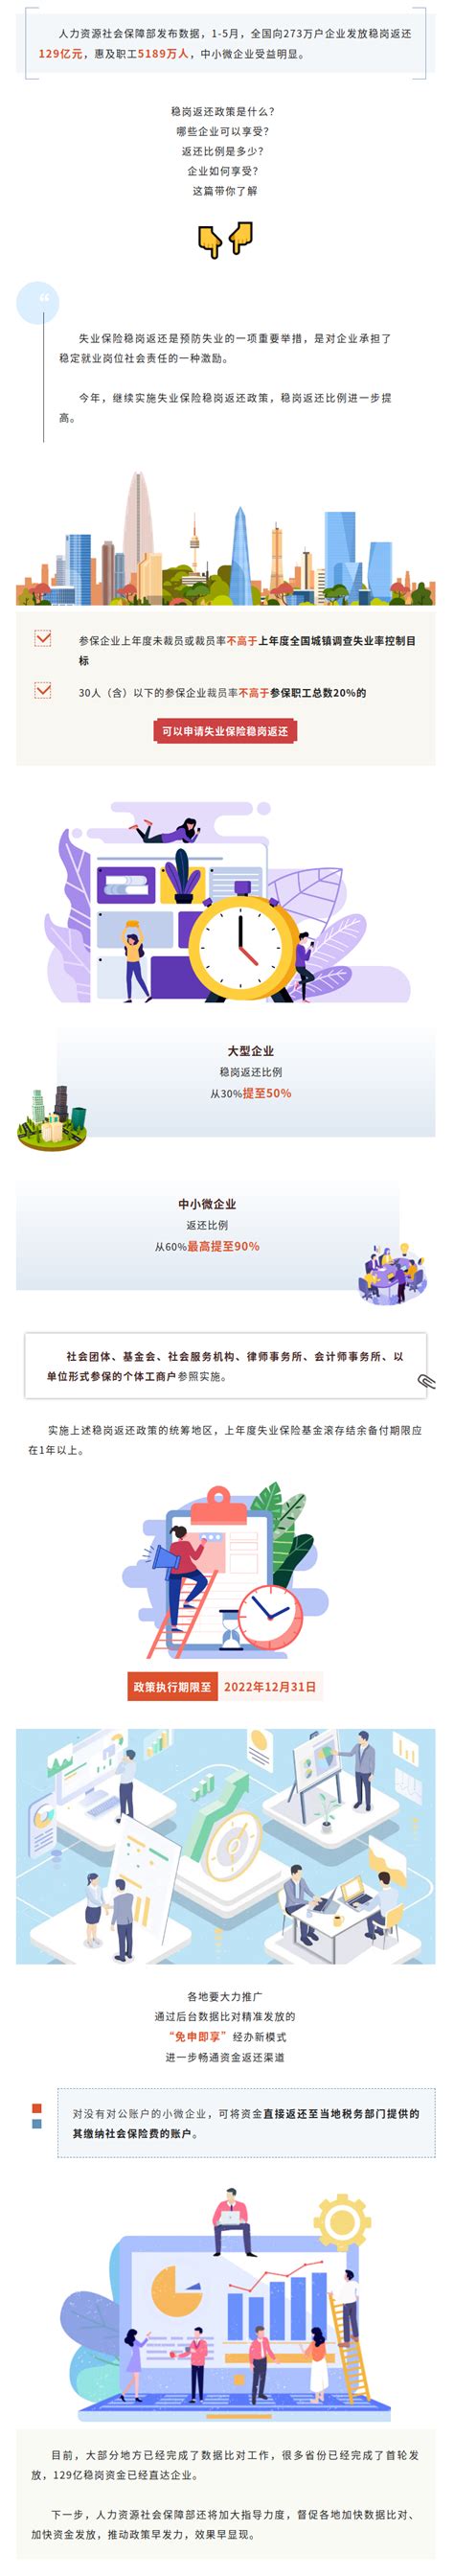 杭州市人力资源和社会保障网官网_杭州市人力资源和社会保障网网址 - 杭州本地宝